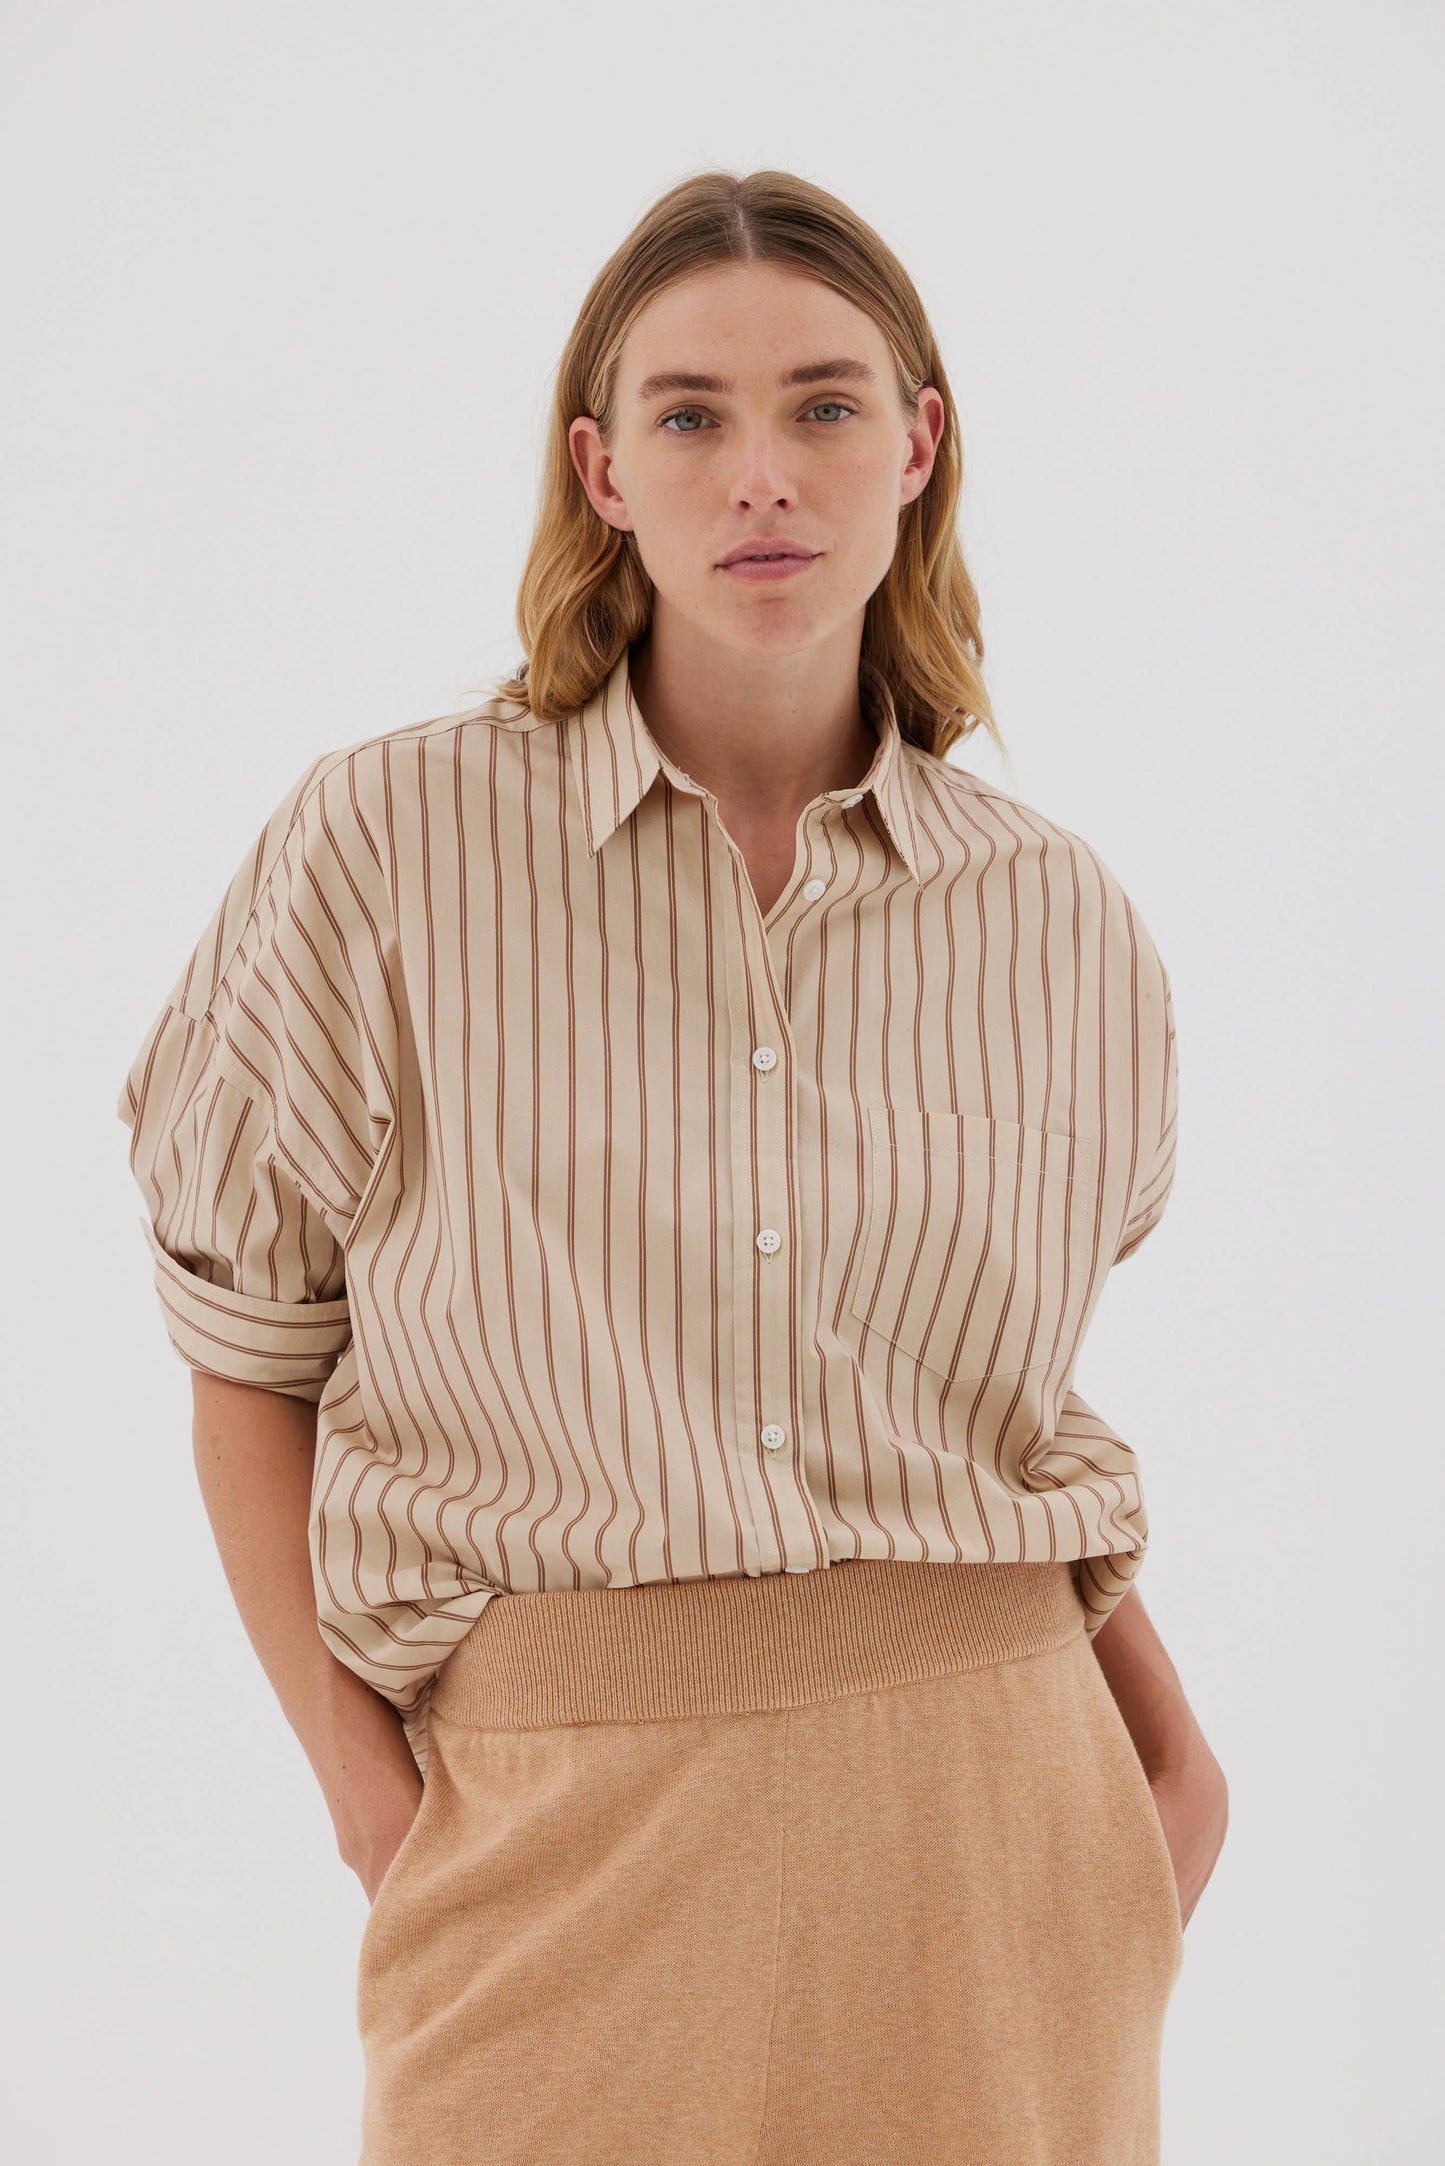 The Chiara Shirt in Oat & Nutshell Stripe